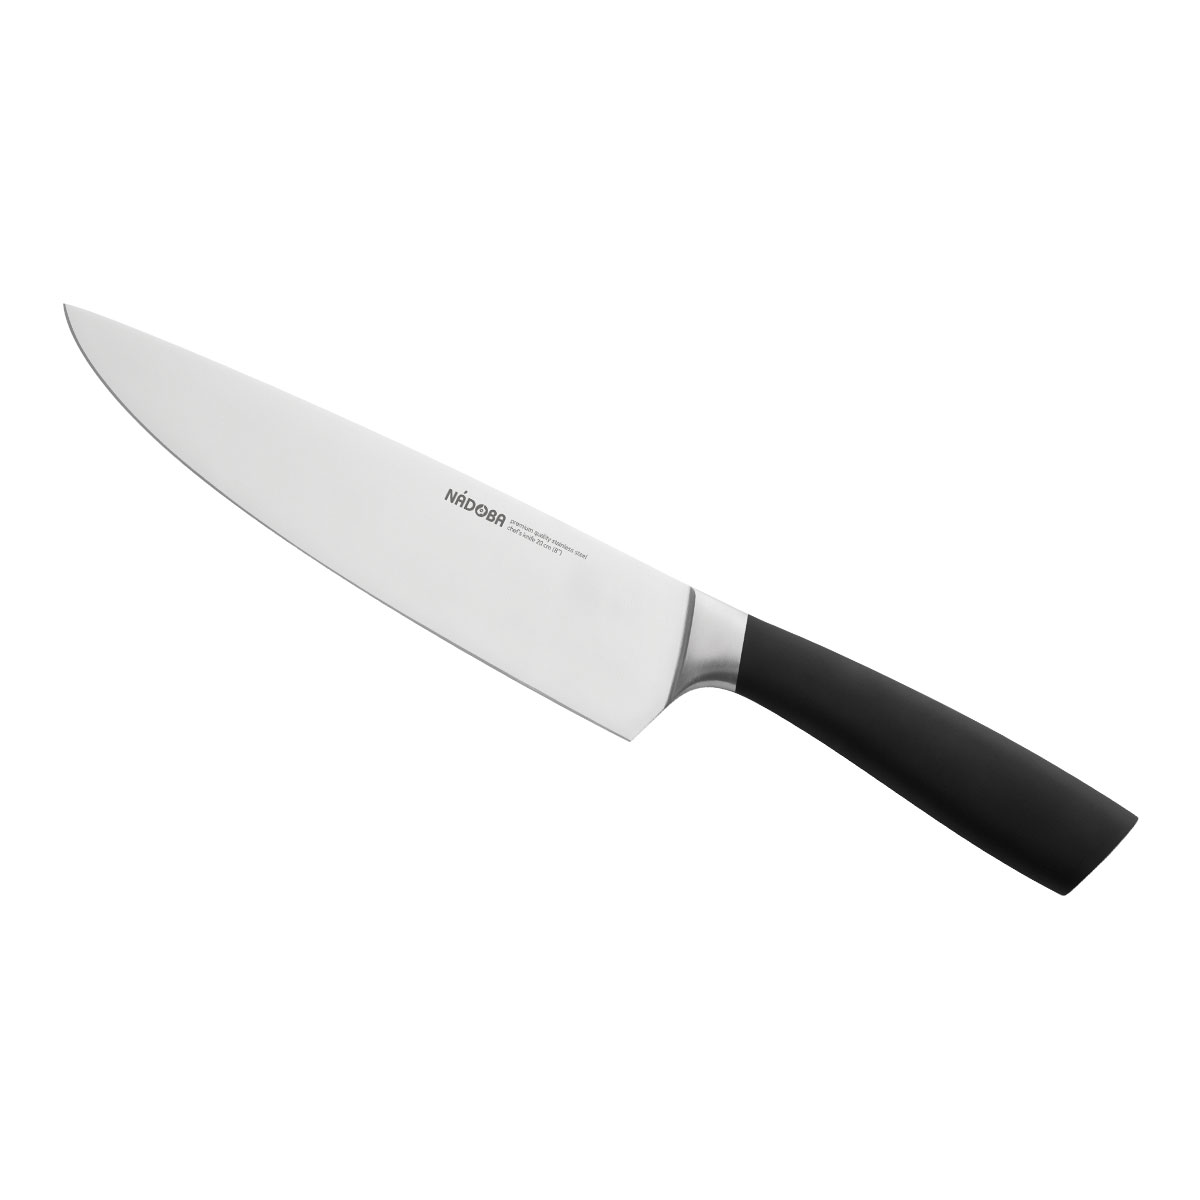 Нож Nadoba поварской 723910, 20 см